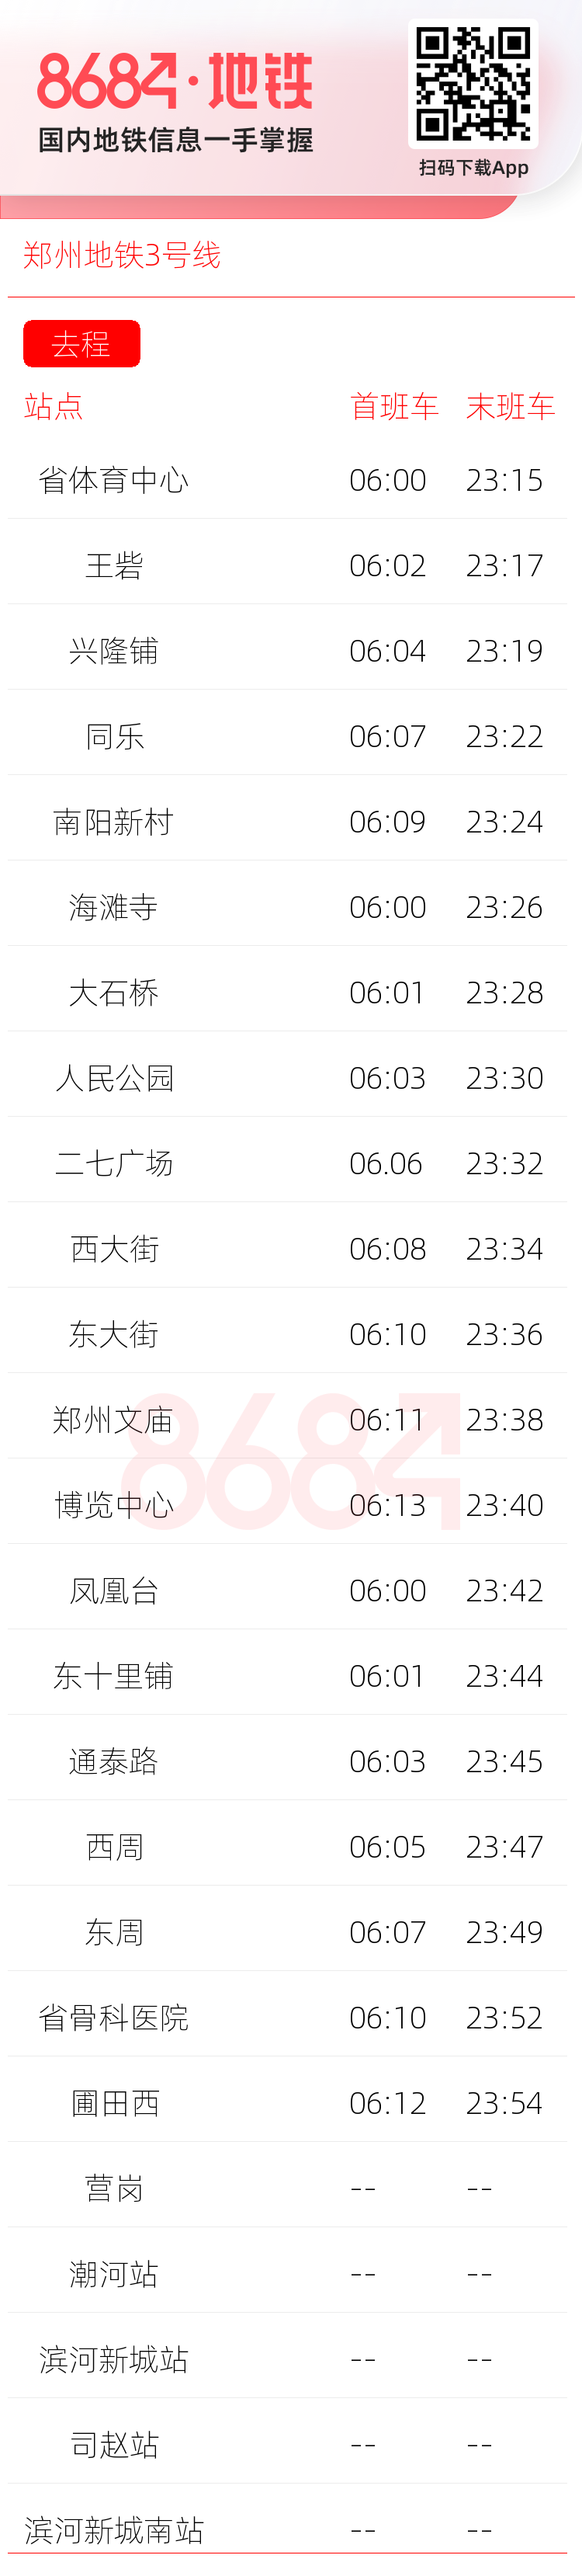 郑州地铁3号线运营时间表